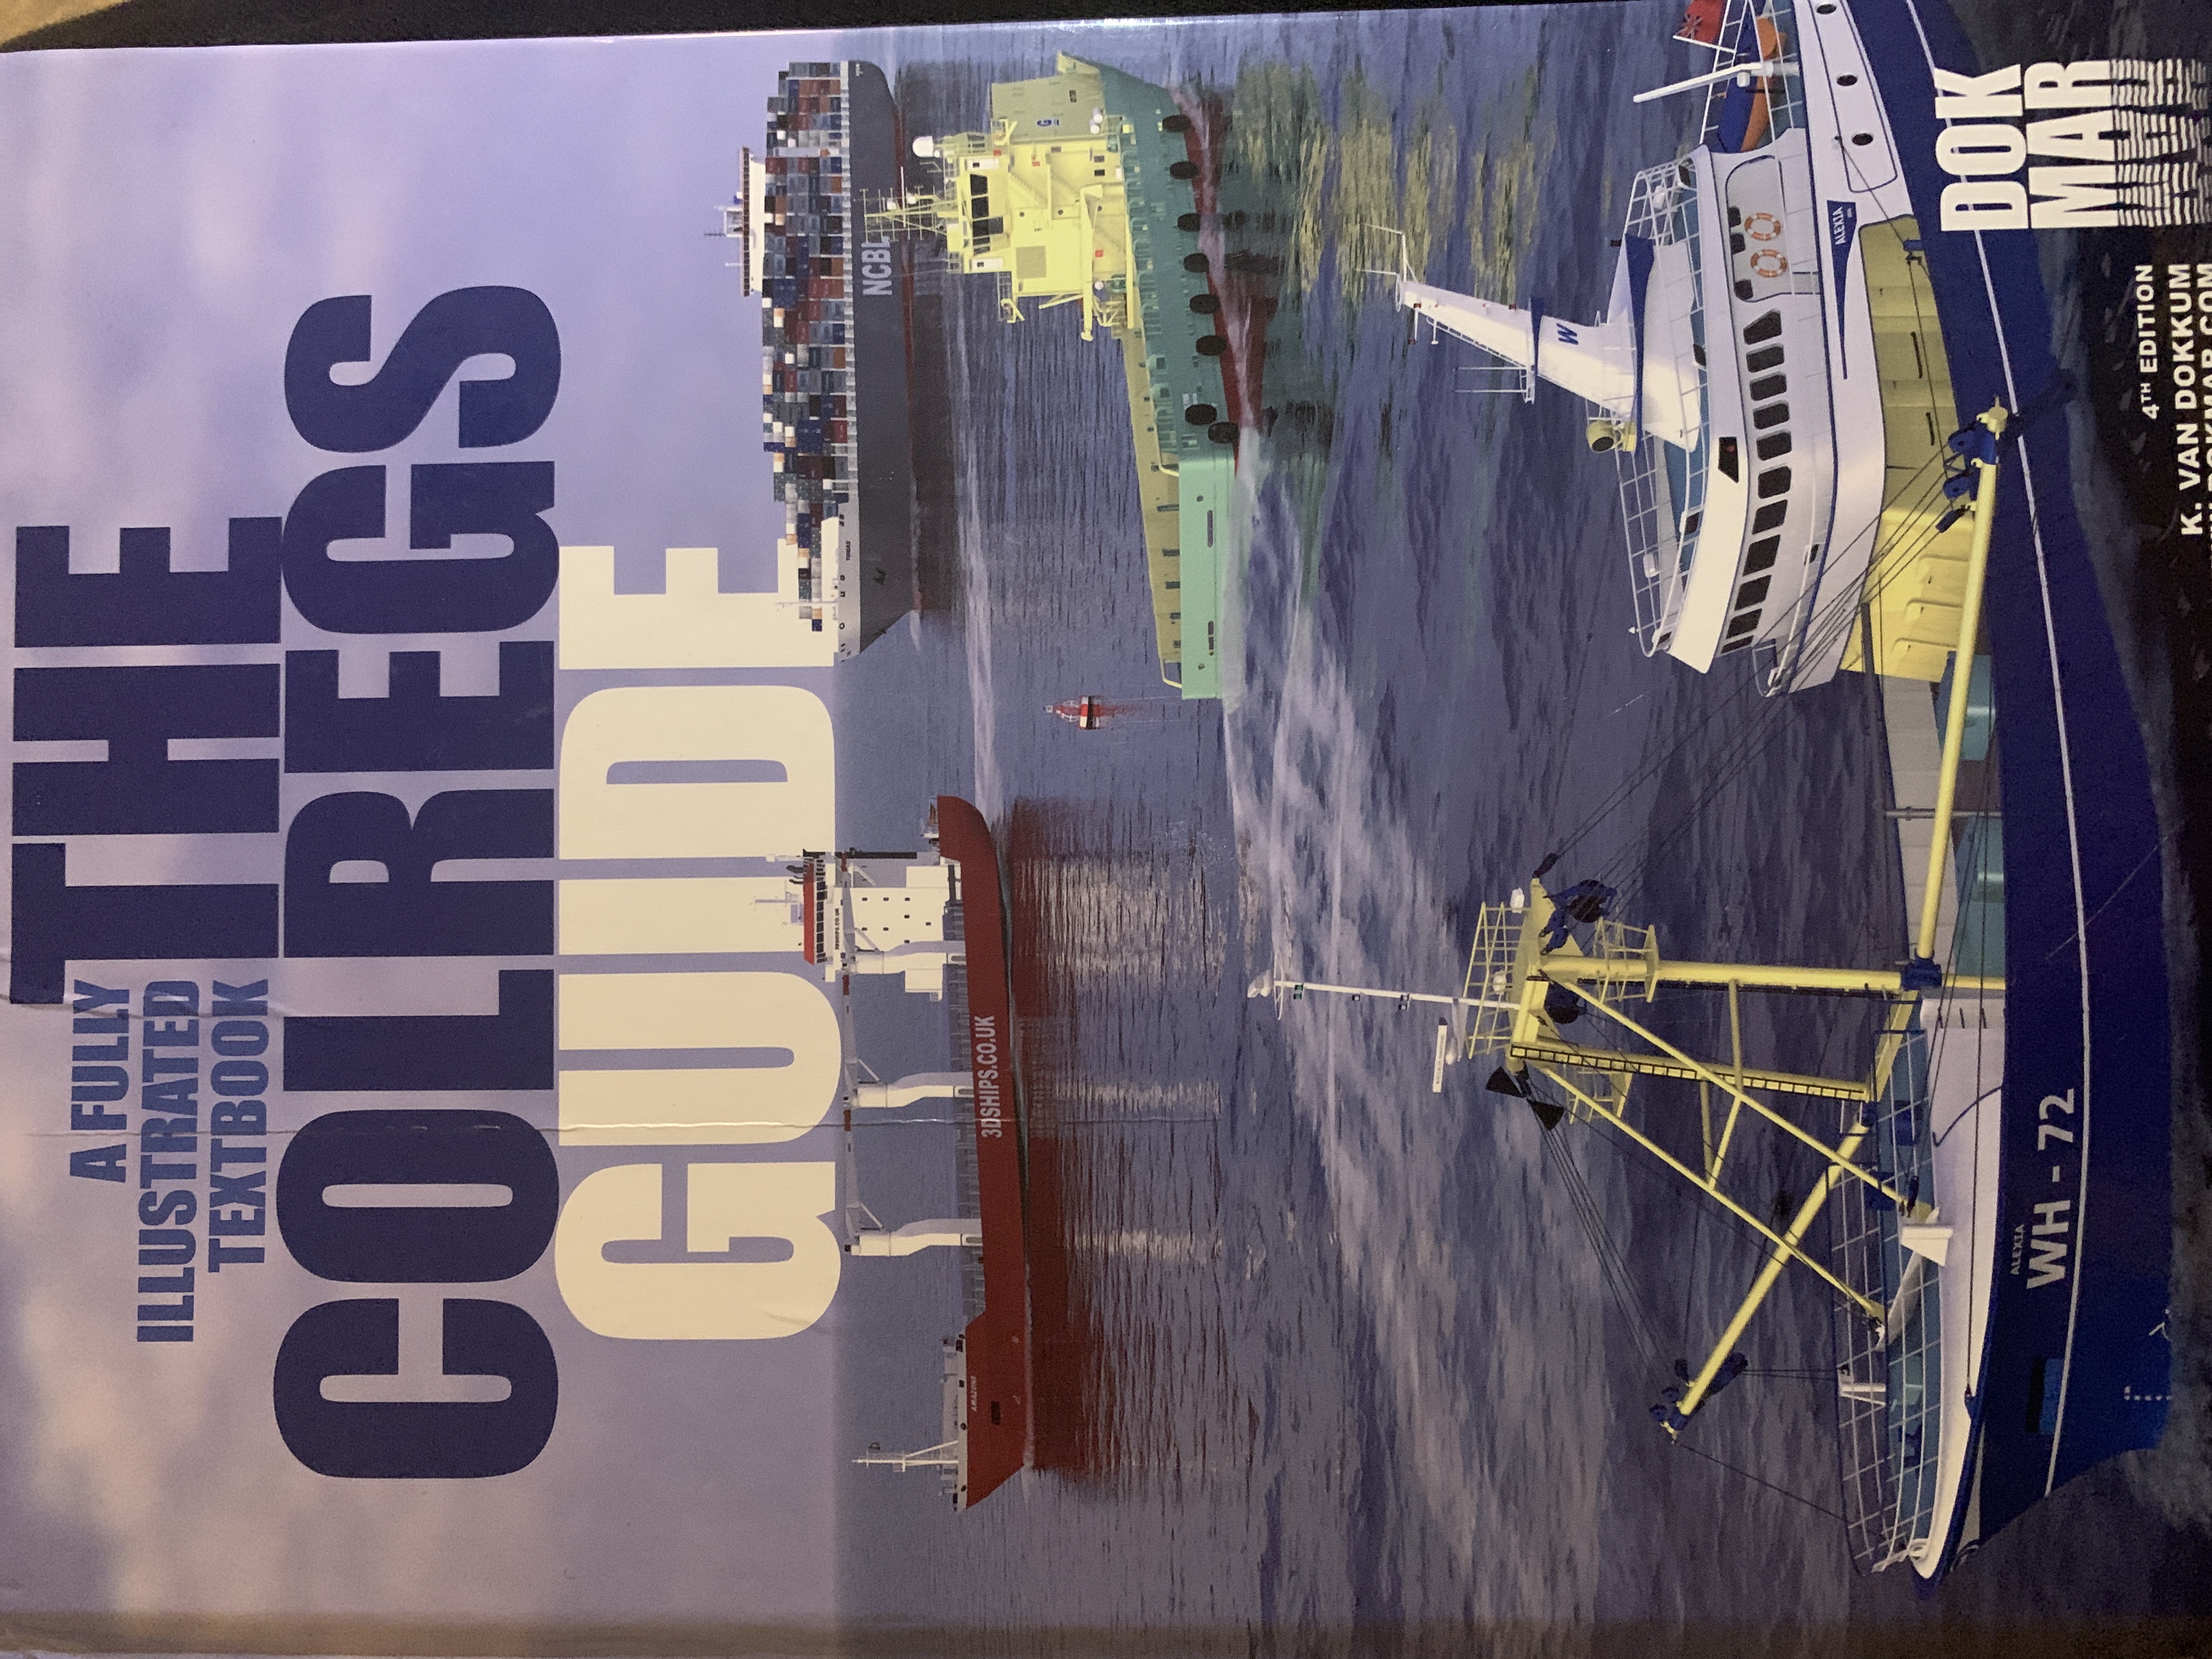 The Colregs guide; Klaas van Dokkum; 2012